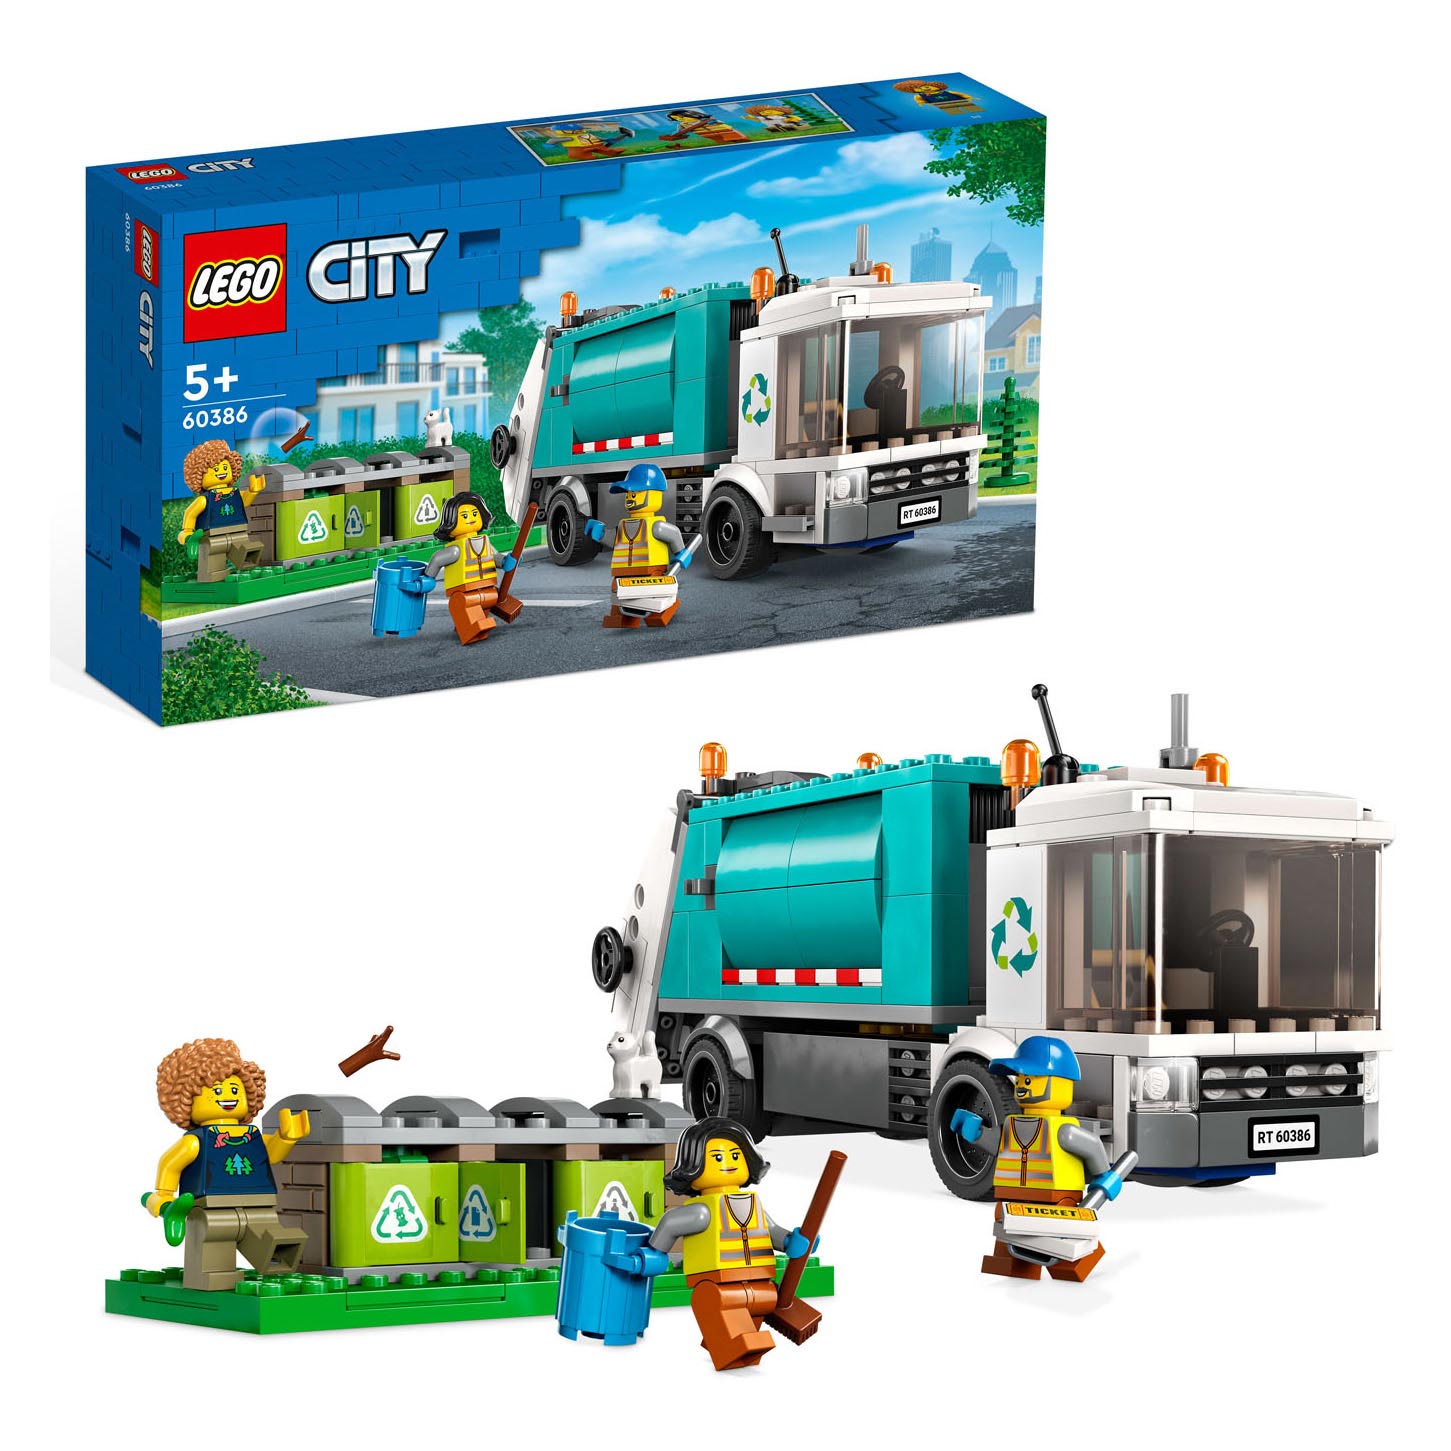 gespannen Nauwgezet engel LEGO City 60386 Recycle Crachtwagen online ... | Lobbes Speelgoed België